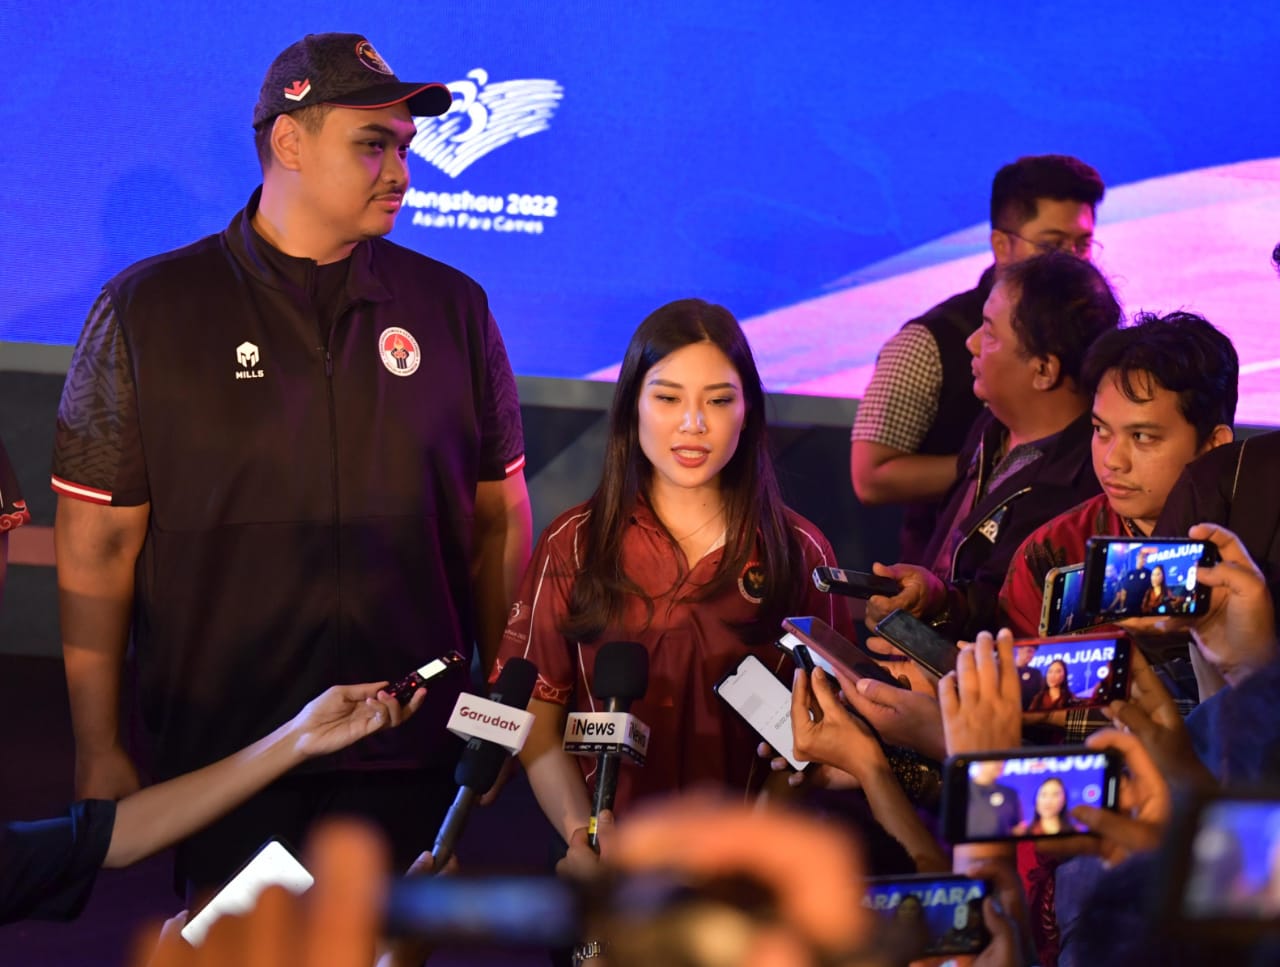 Dukung Para Atlet, CdM Asian Para Games 2022 Ajak Media Gaungkan Tagar #parajuara